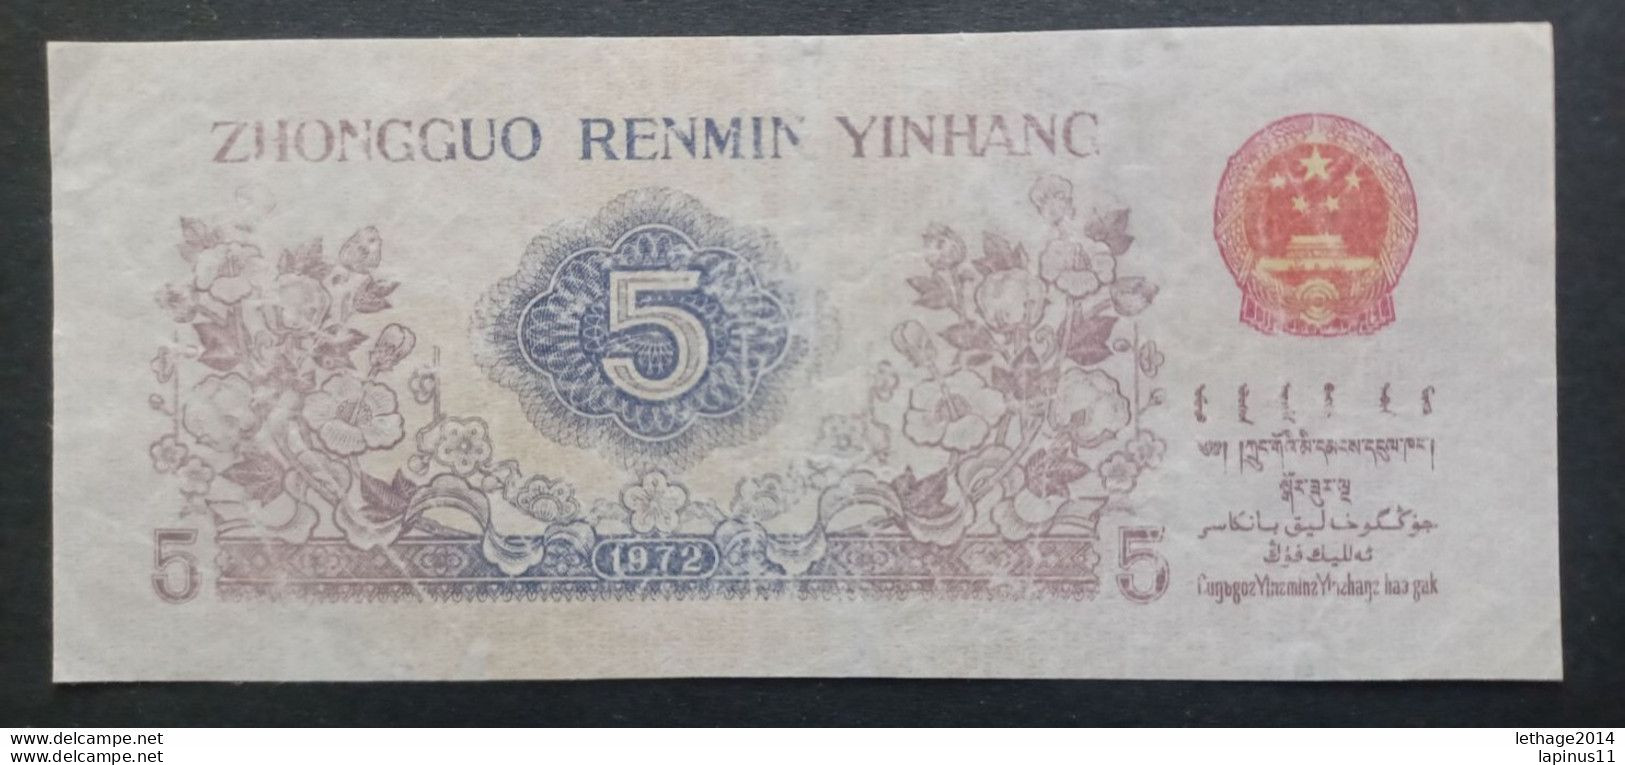 BANKNOTE CINA ZHONGGUO RENMI YINHANG 5 WU JIAO 1972 UNCIRCULATED - China